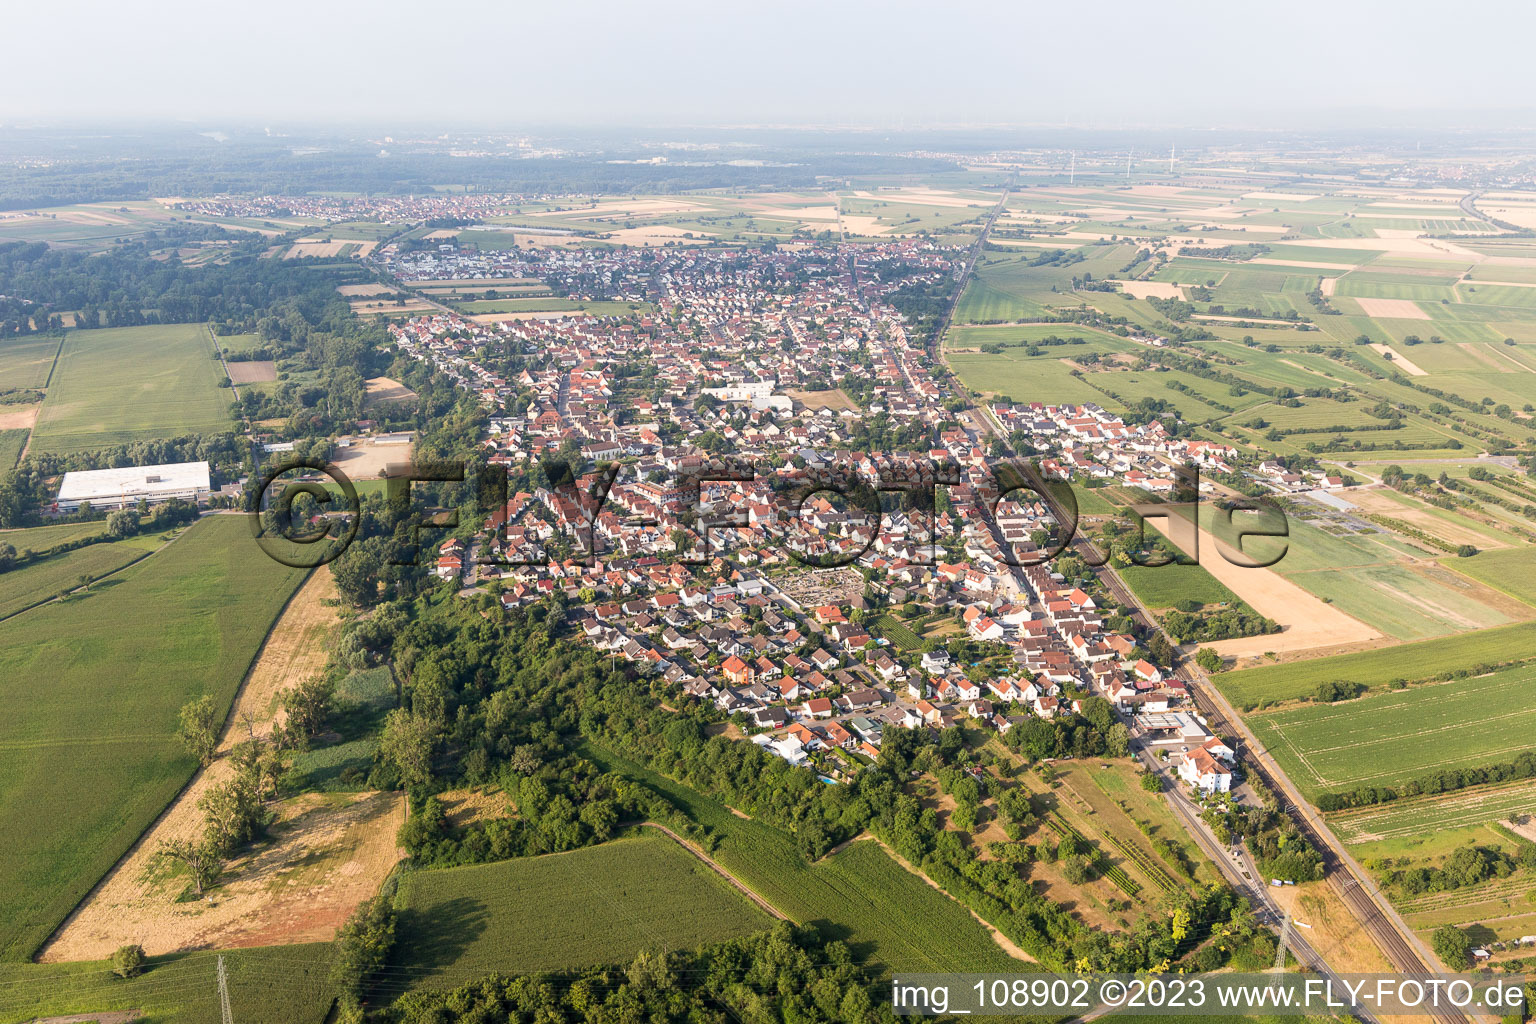 Quartier Berghausen in Römerberg dans le département Rhénanie-Palatinat, Allemagne hors des airs